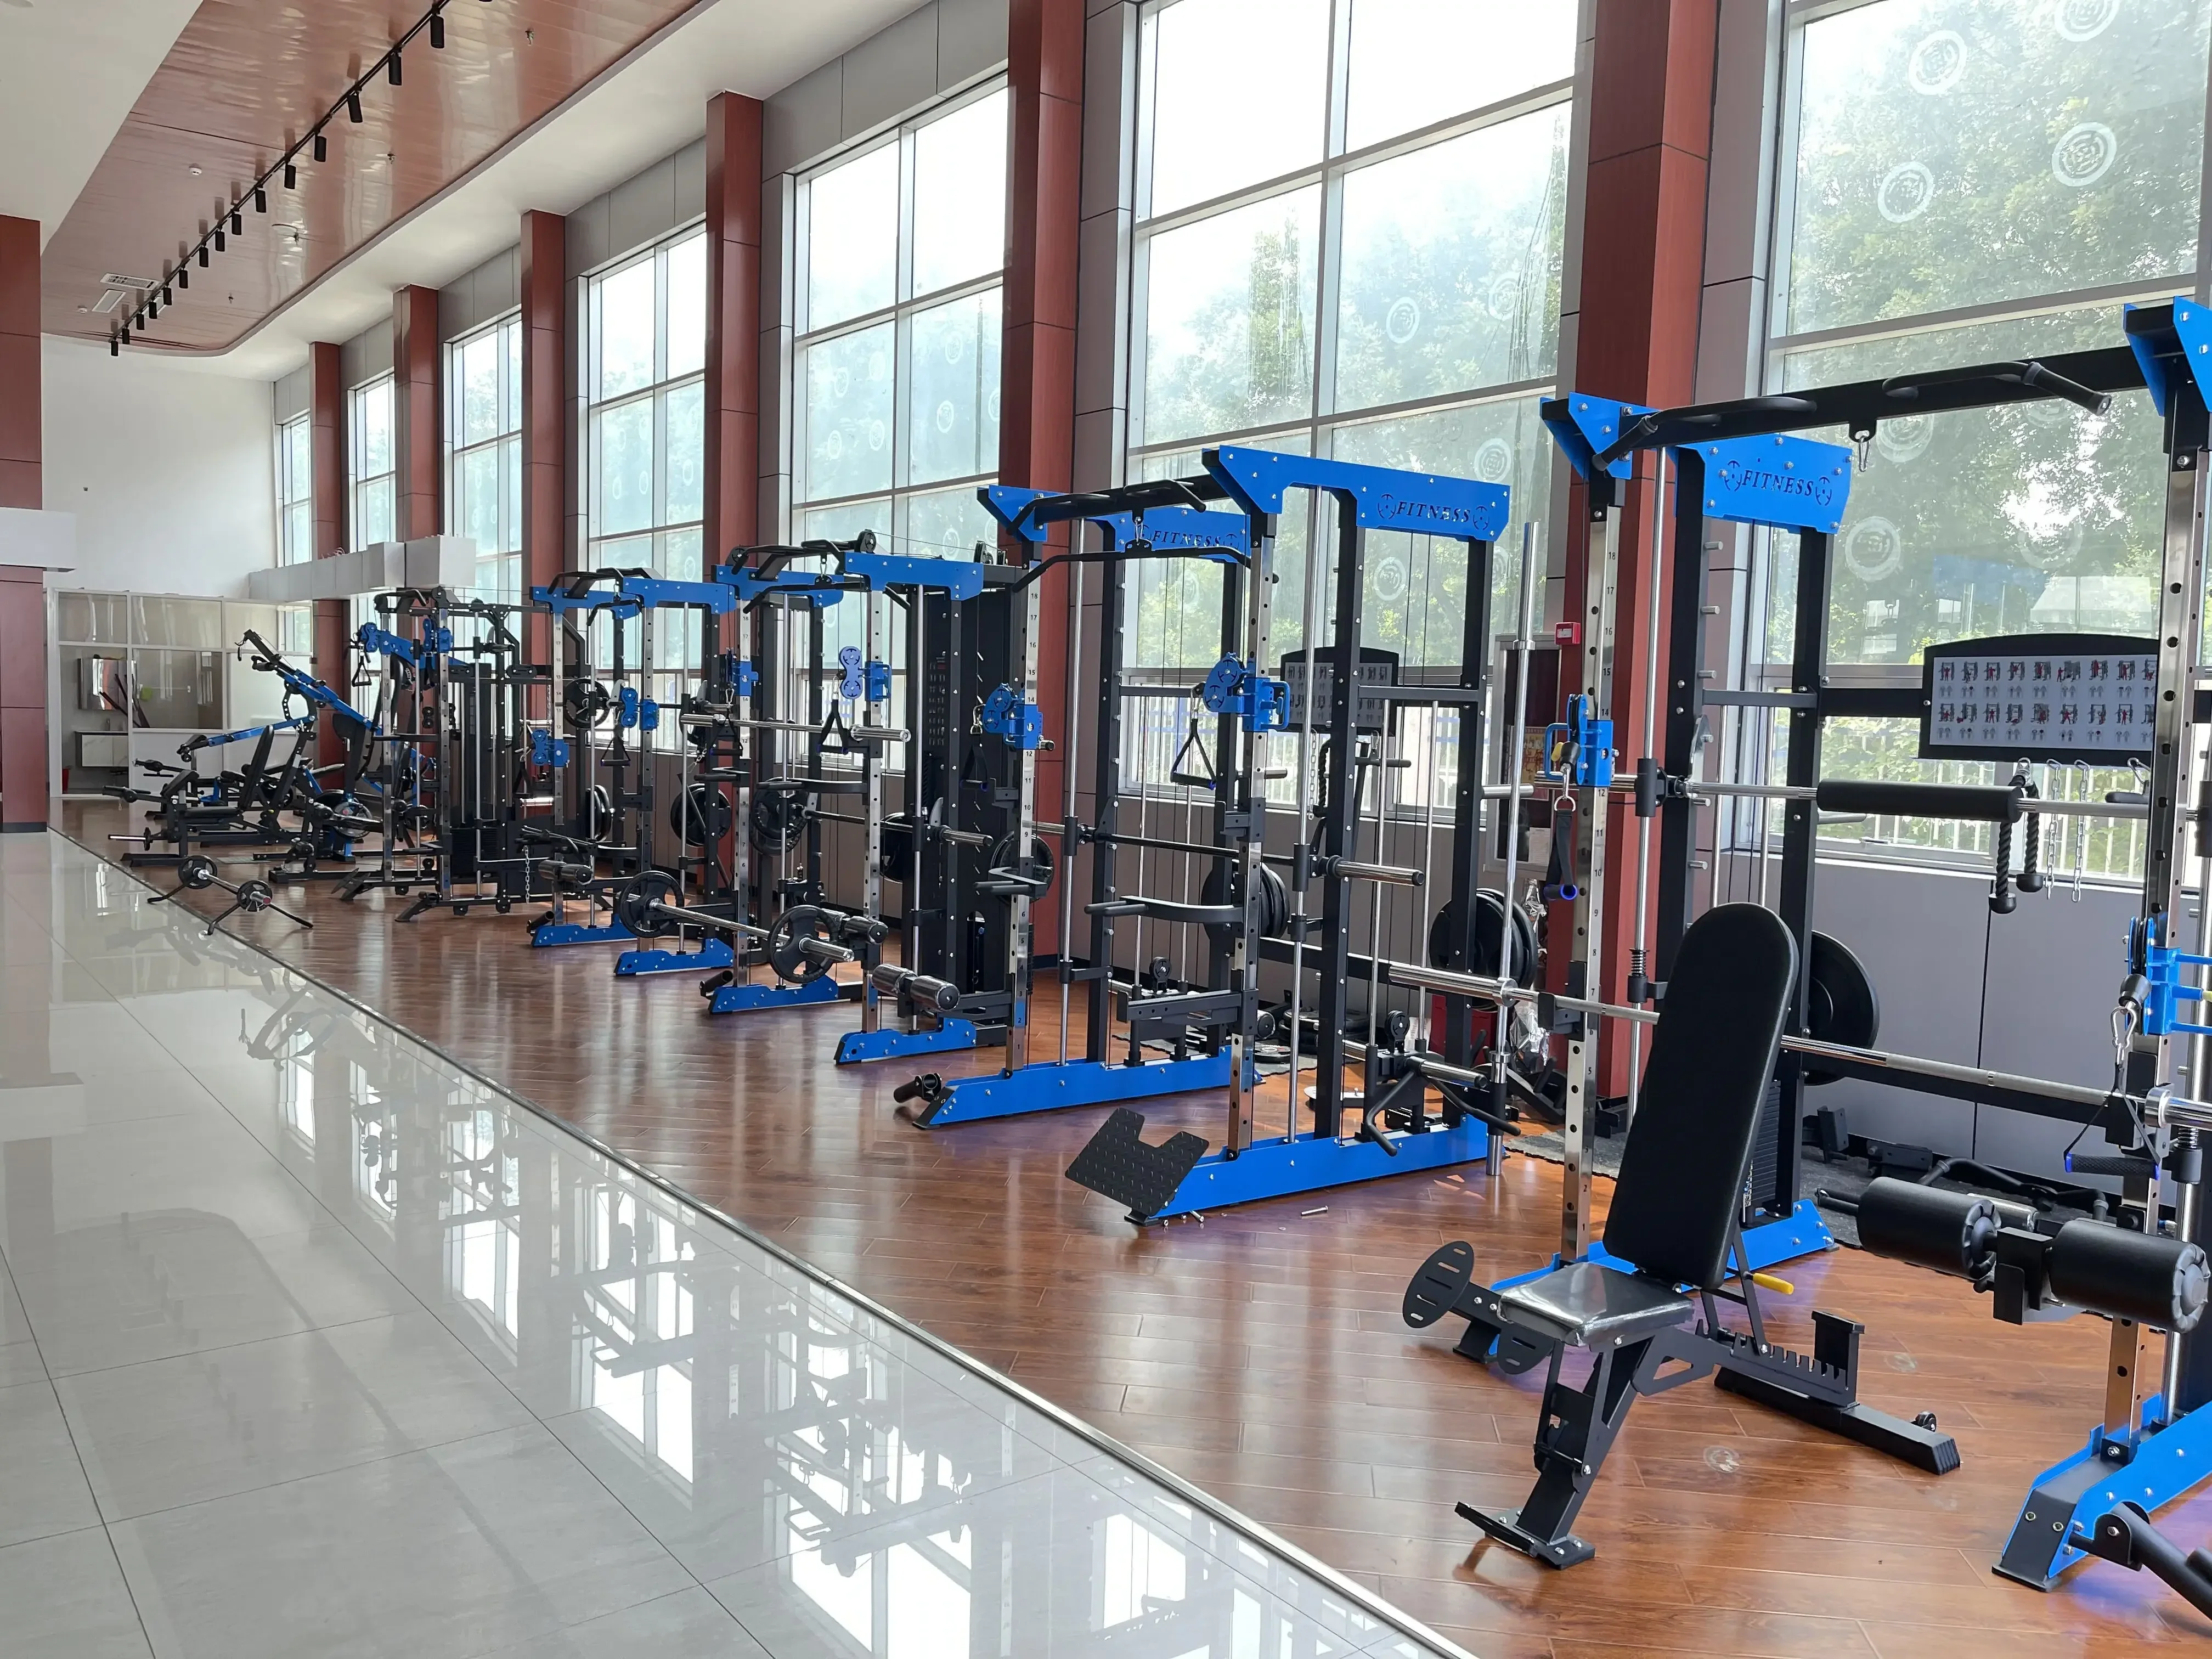 Equipo de gimnasio multifuncional profesional, máquina de entrenamiento  todo en uno, estante de sentadillas multiestación - AliExpress, maquina  gimnasio multifuncion